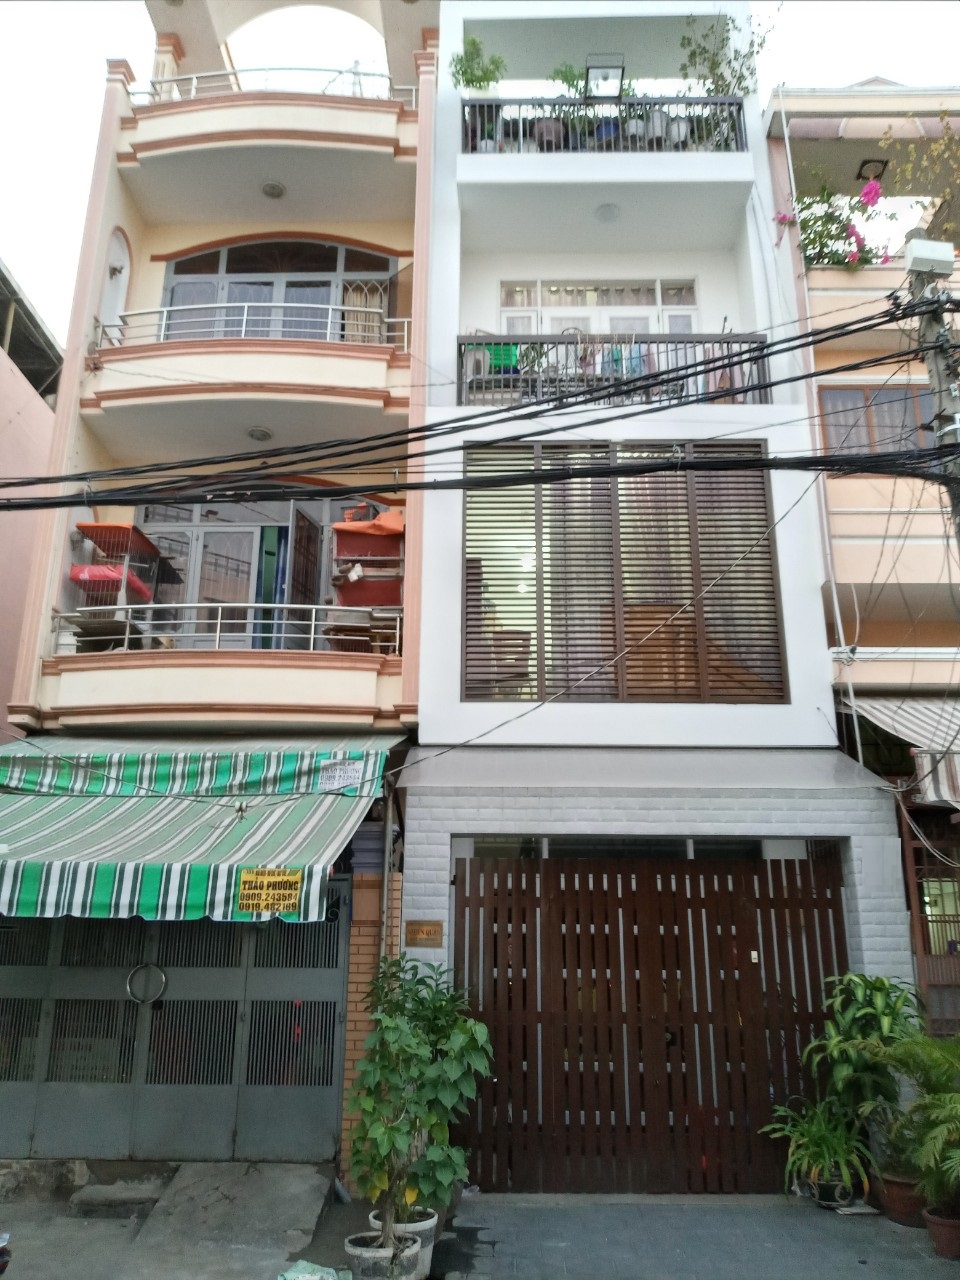 Bán nhà căn góc 2 mặt tiền đường Nguyên Hồng,  P11, Bình Thạnh, giá:12,5 tỷ 